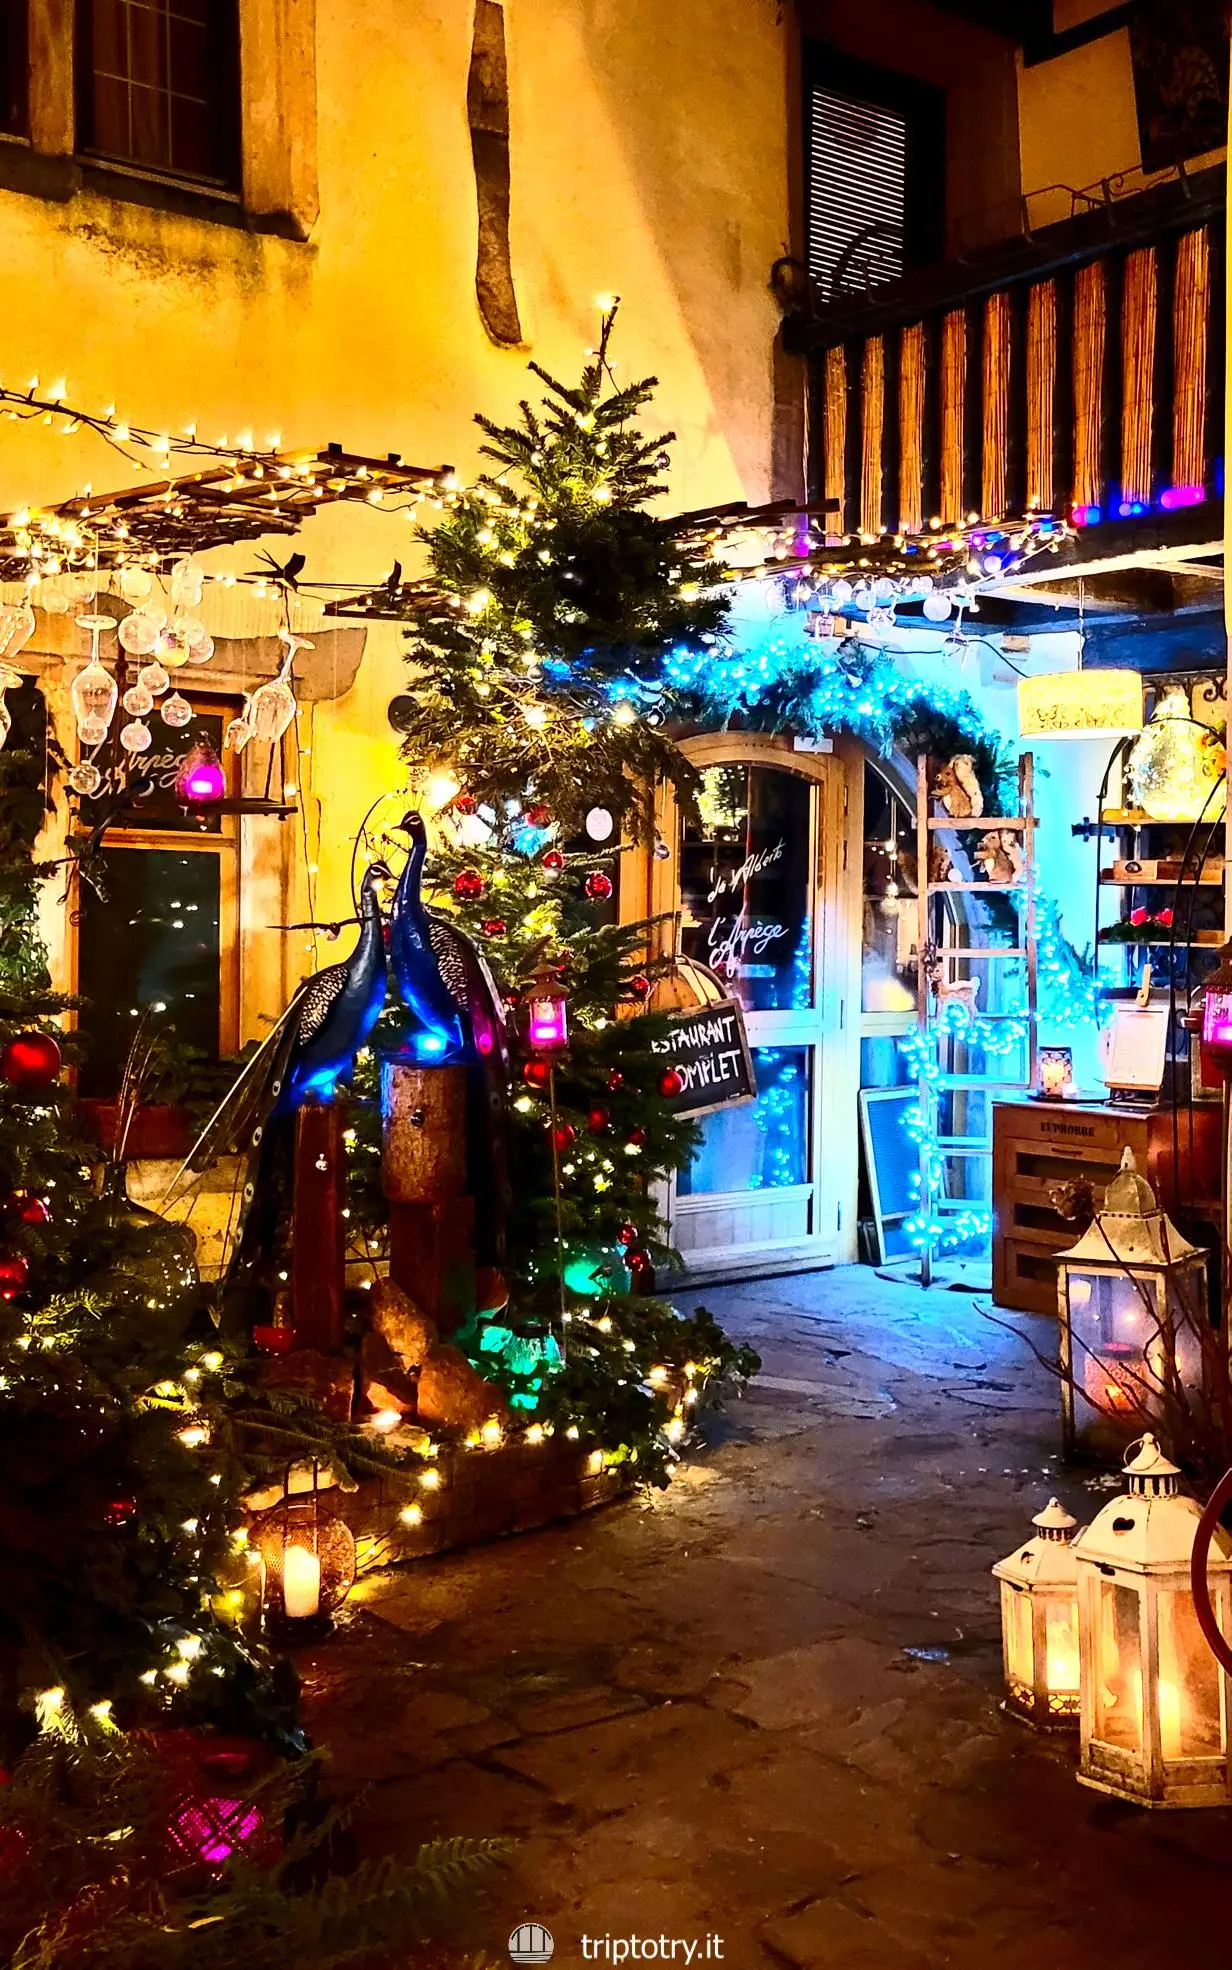 Decorazioni e luci natalizie in un ristorante nel centro storico di Colmar in Francia